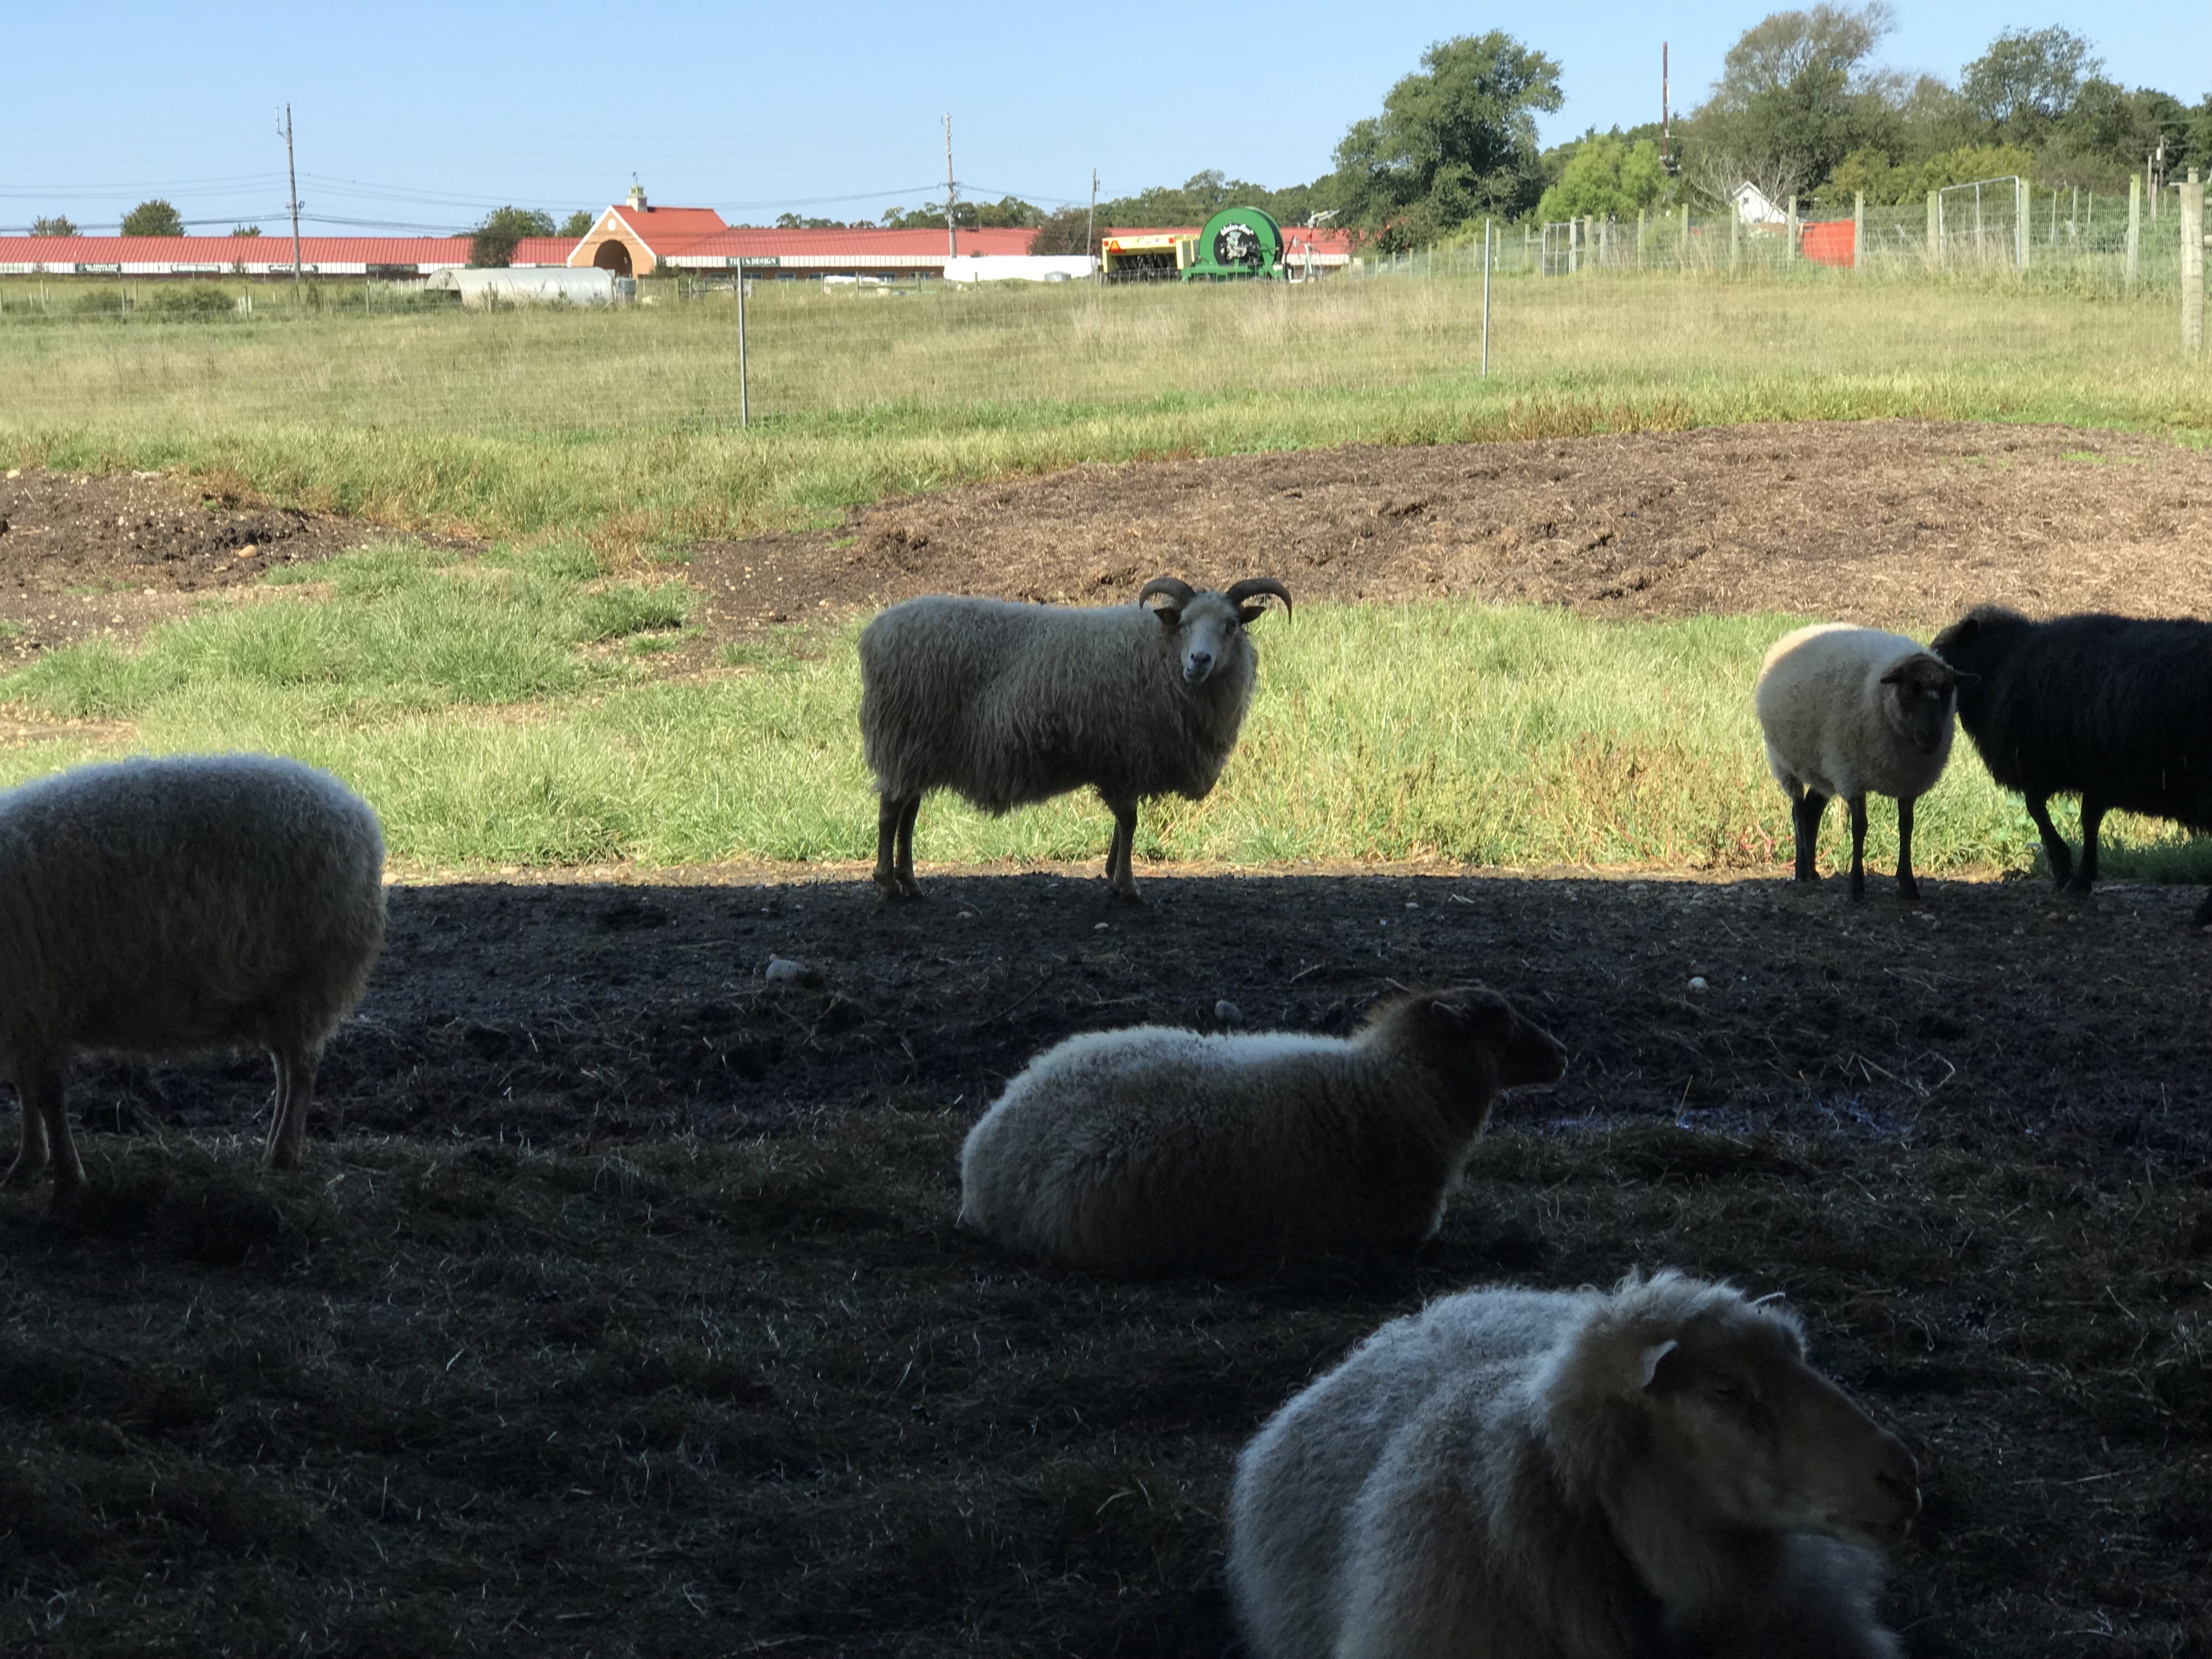 Sheep at 8 Hands Farm